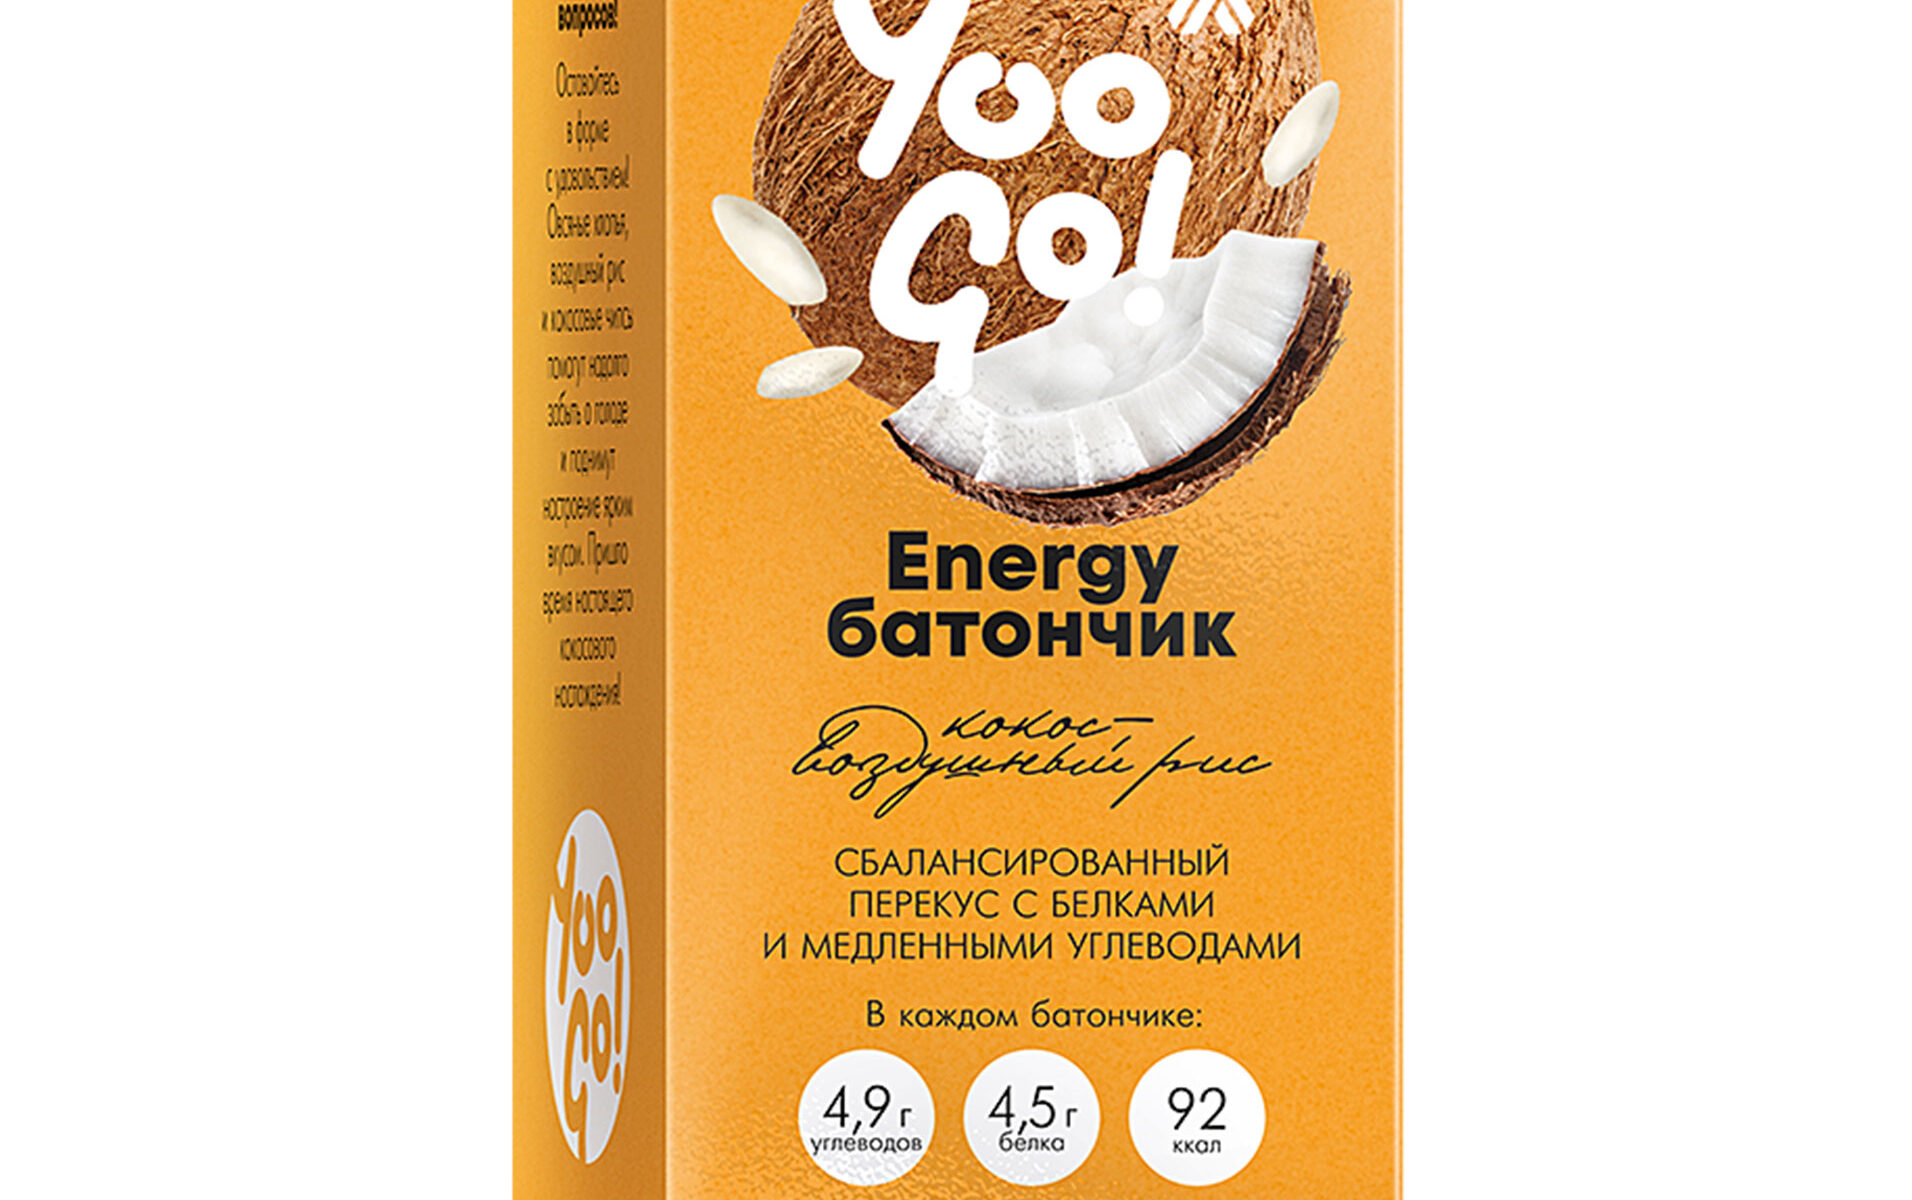 Energy-батончик (кокос-воздушный рис) Yoo Gо